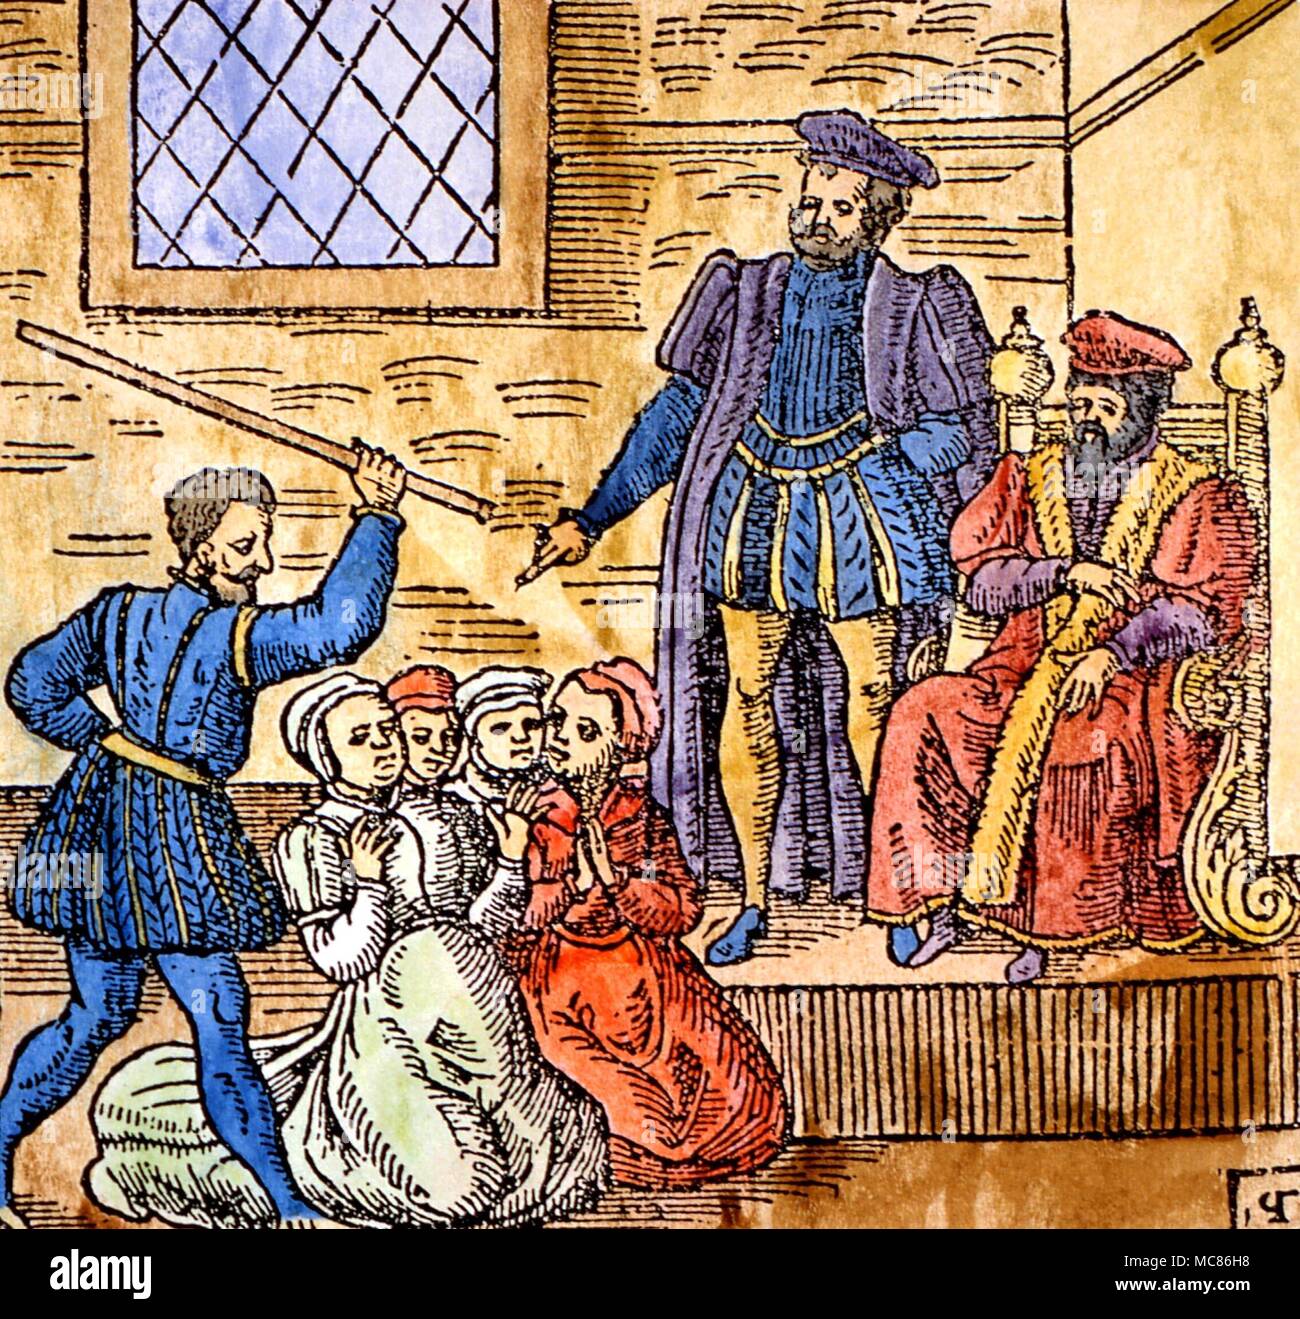 La tortura brujería xilografía muestra el rey escocés James VI, más tarde James I de Inglaterra, supervisando la tortura de brujas en Edimburgo, circa 1590. A partir de la edición 1591 de "Newes desde Escocia' Foto de stock